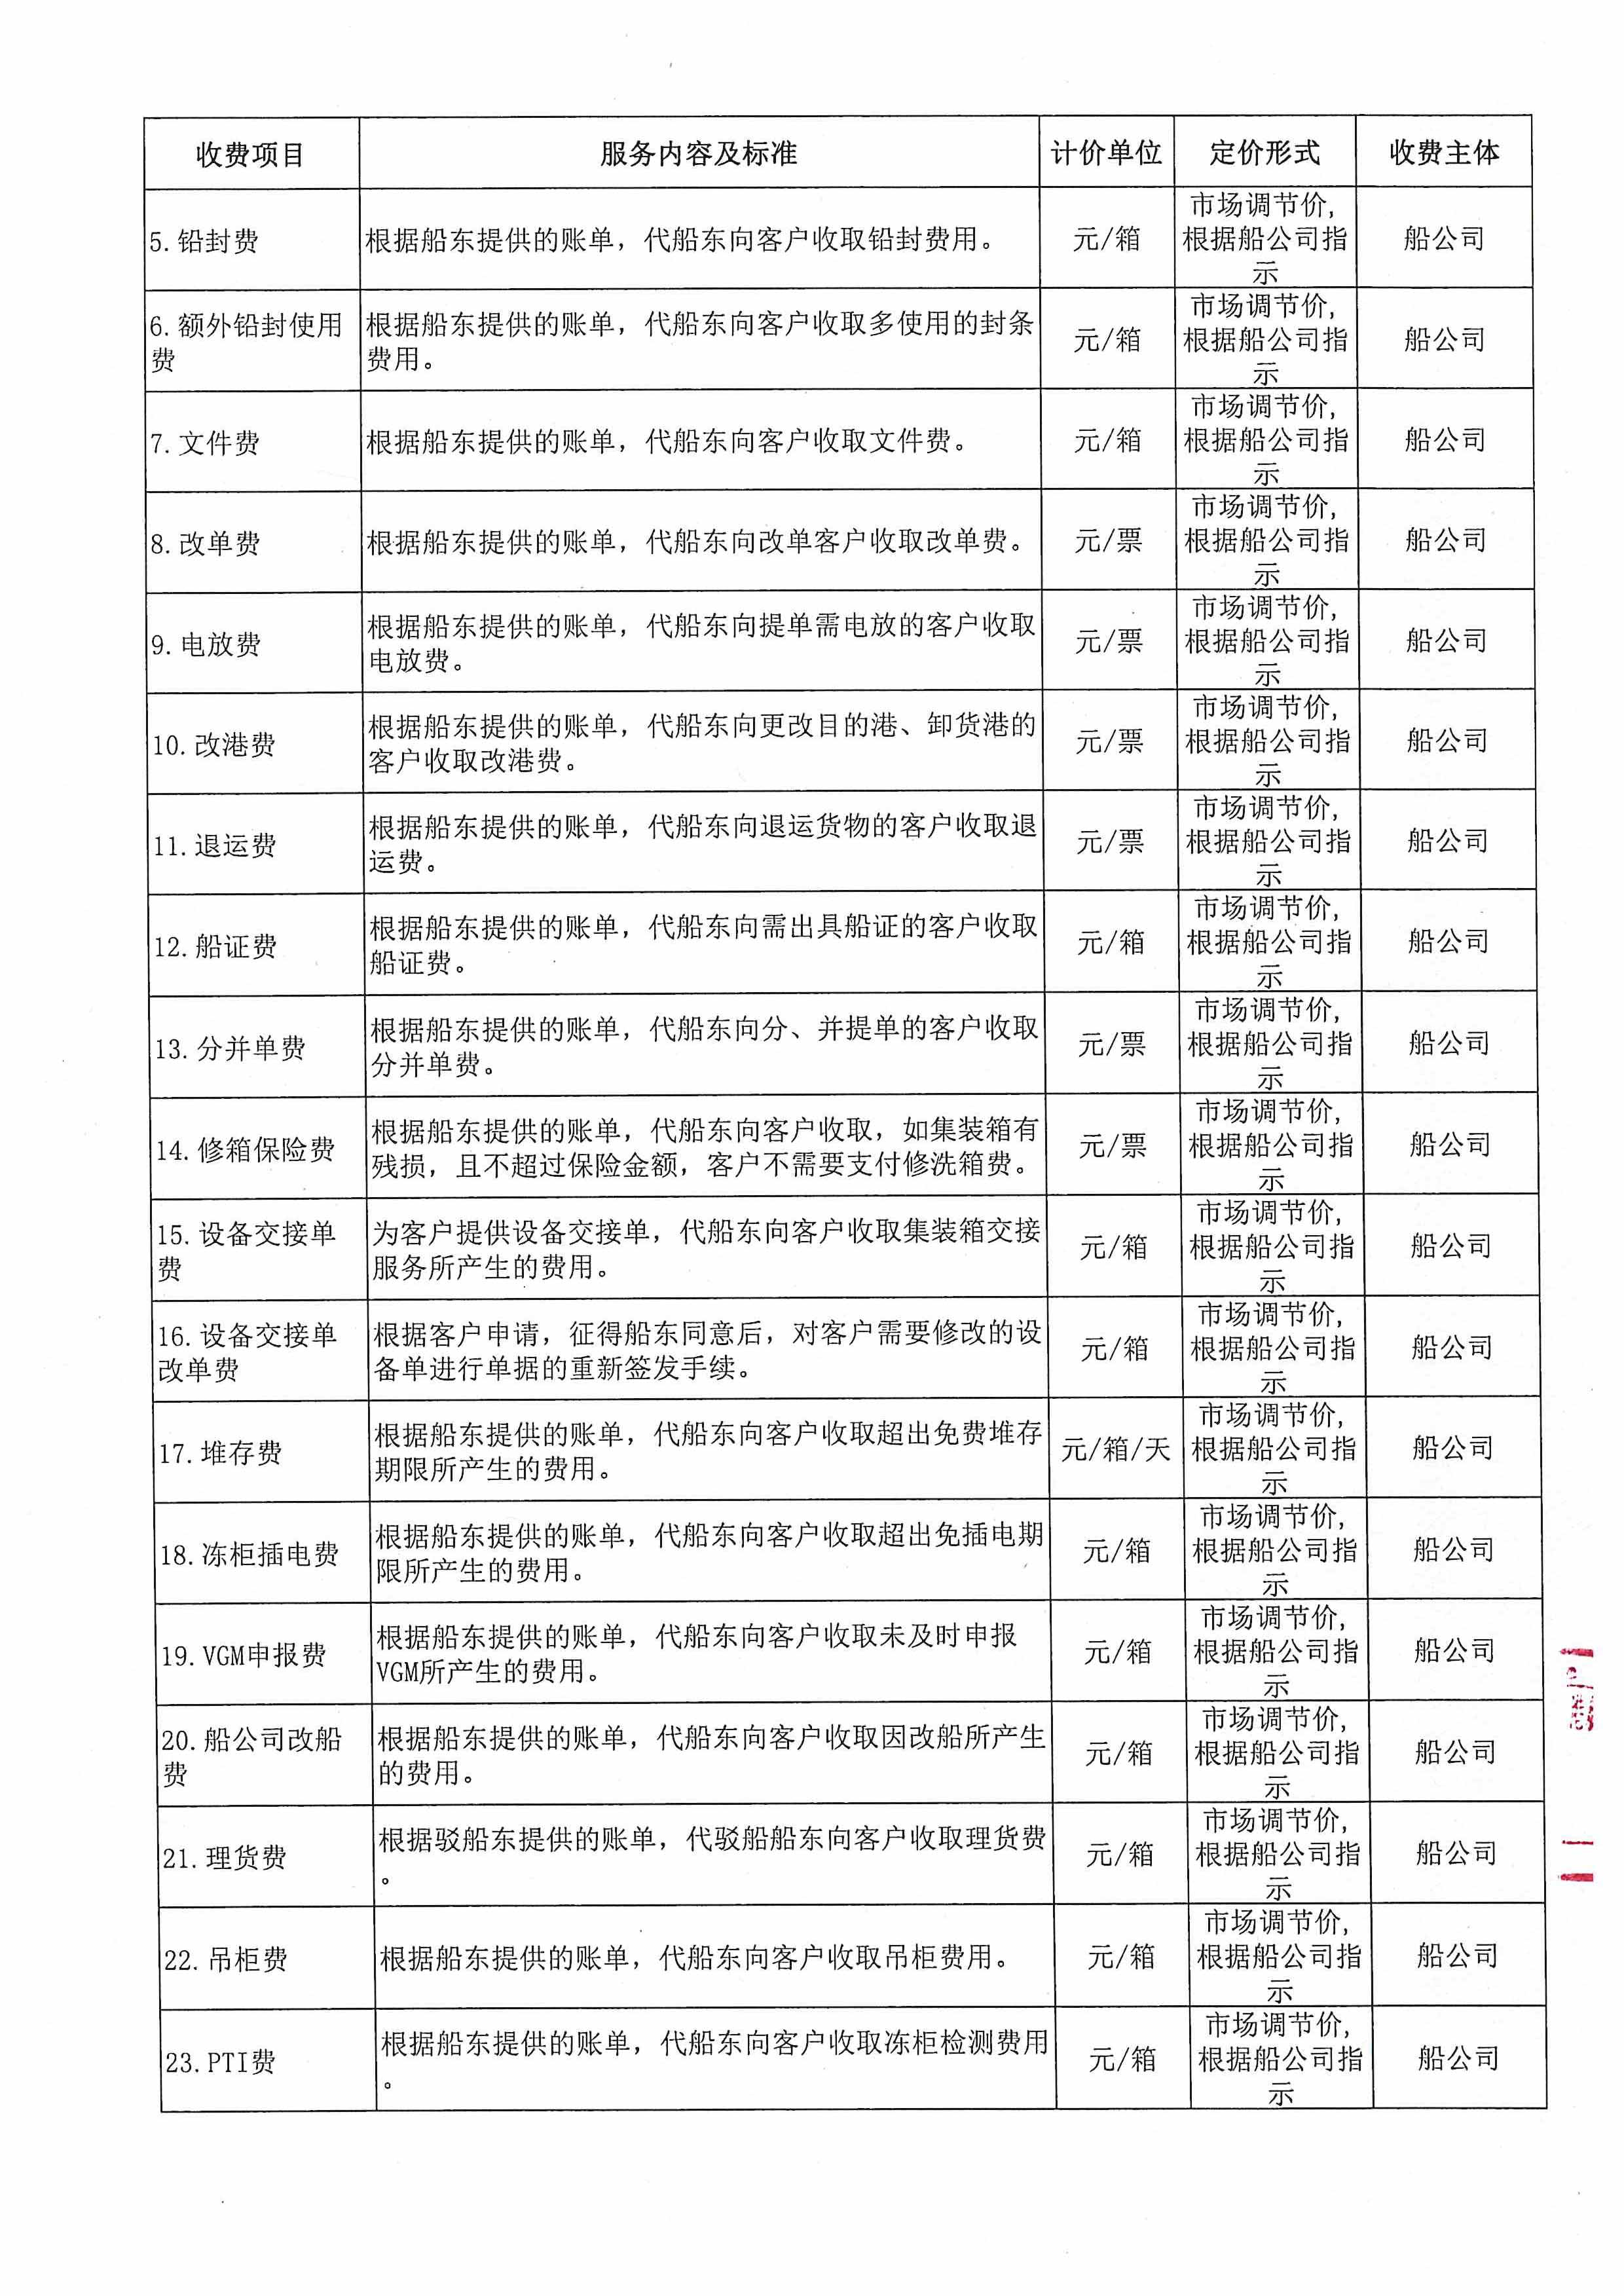 深圳亚联利成富港航服务有限公司收费目录清单_3.jpg